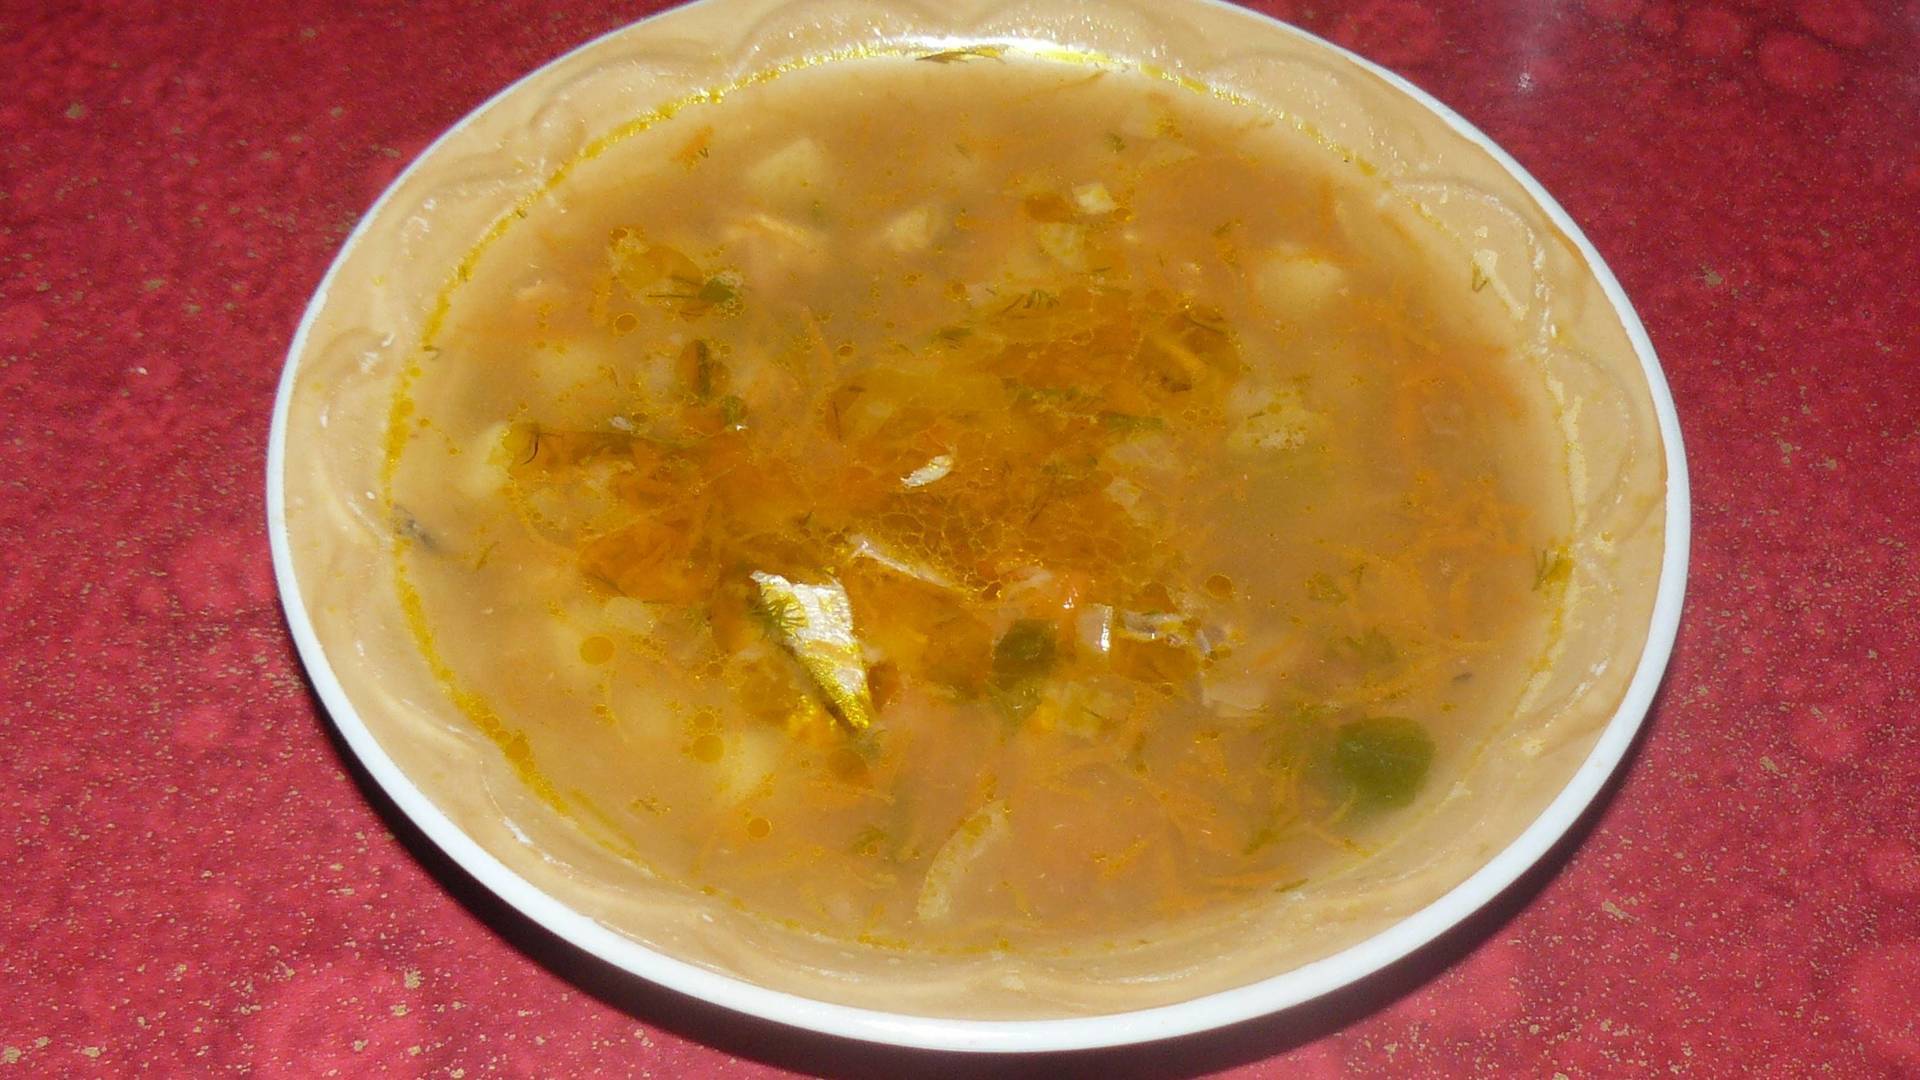 Суп с килькой в томате